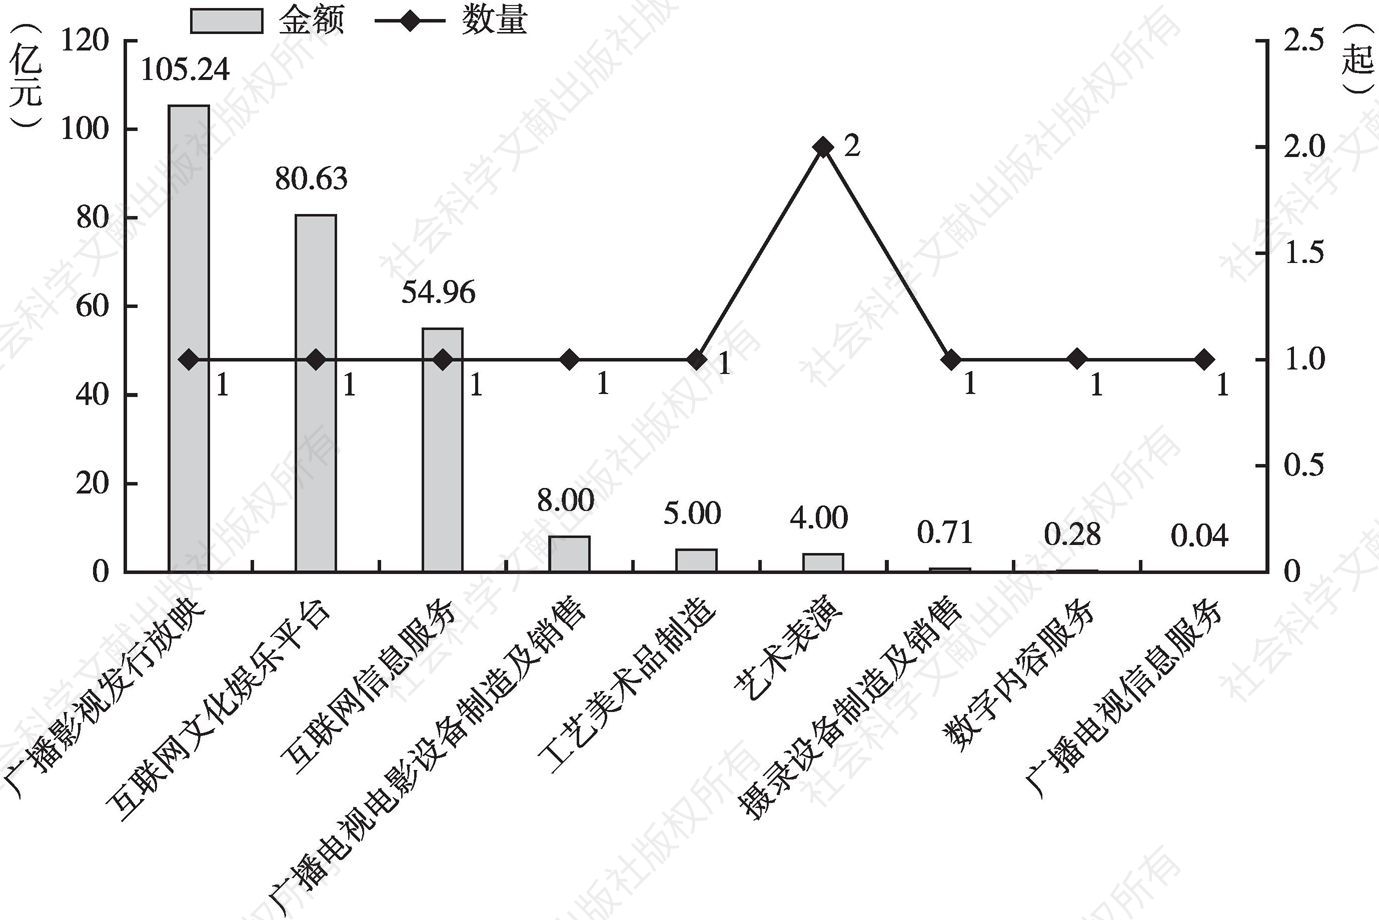 图6 2019年北京文化产业细分领域上市再融资情况